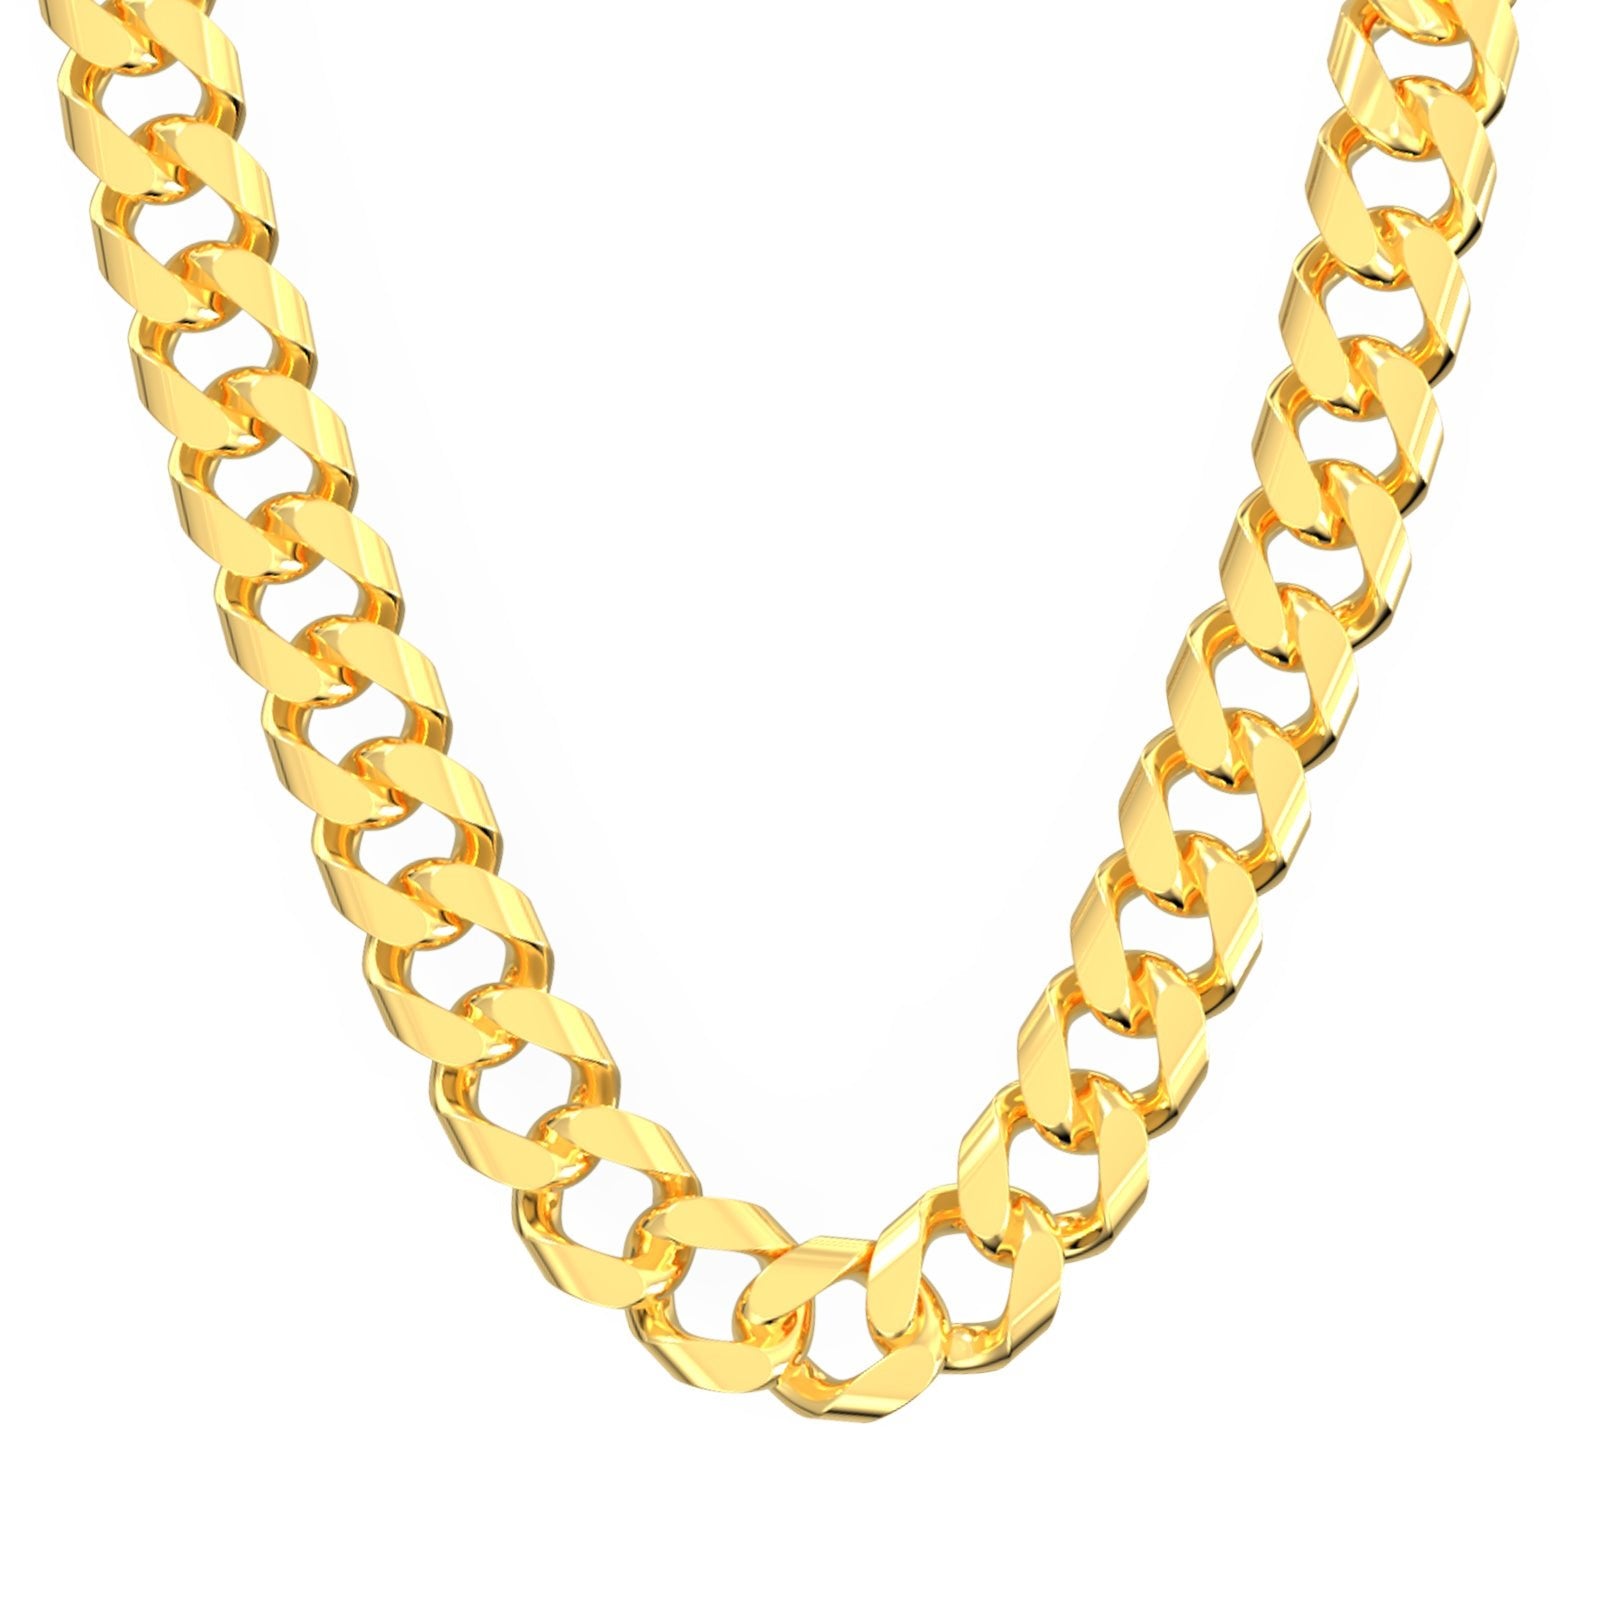 Stunning Handmade Gold Chain For Men